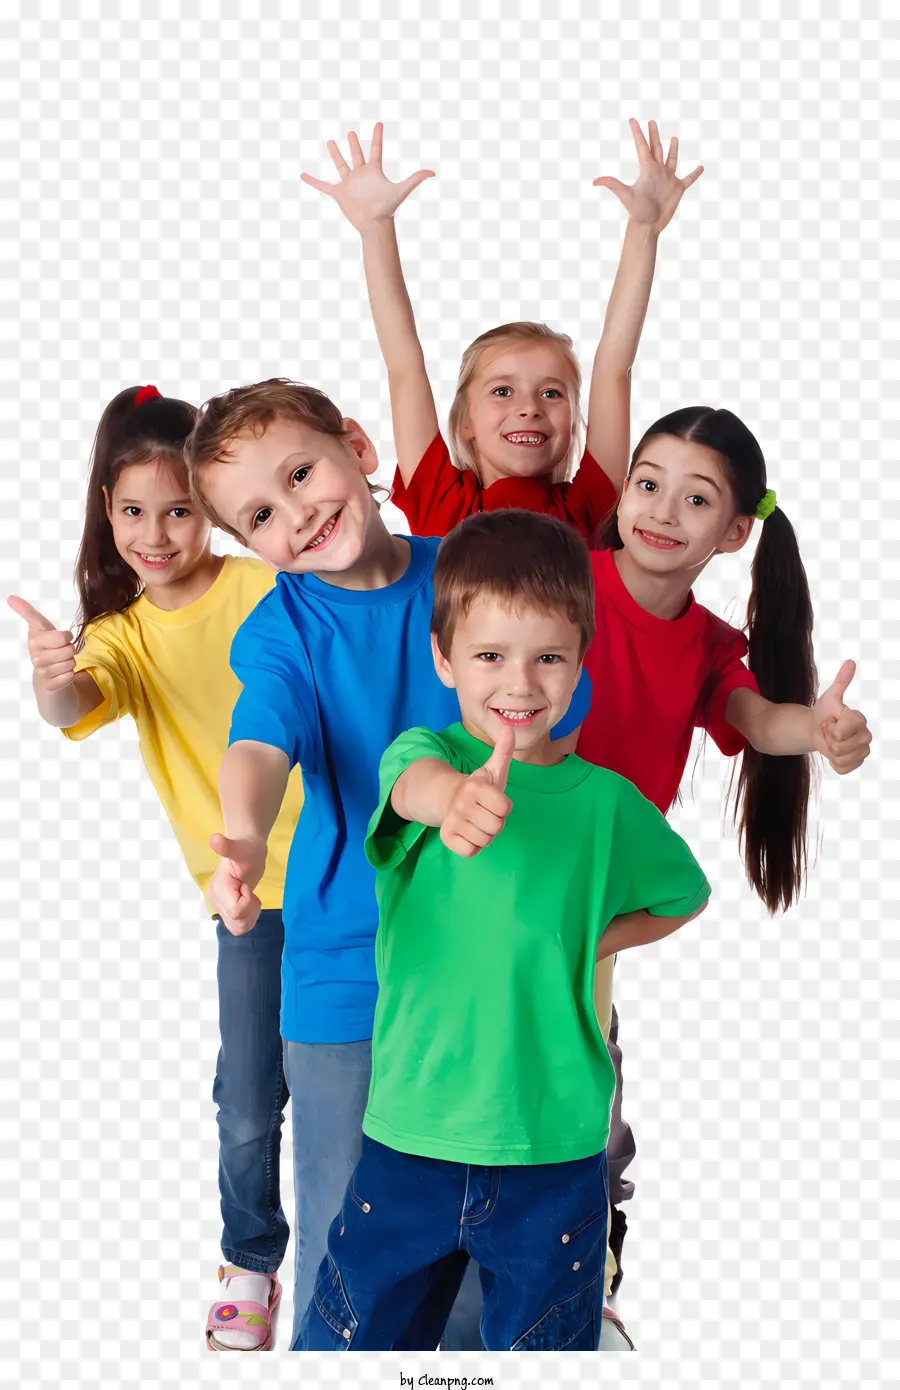 Daumen hoch - Viele Gruppe lächelnder Kinder in farbenfrohen Hemden